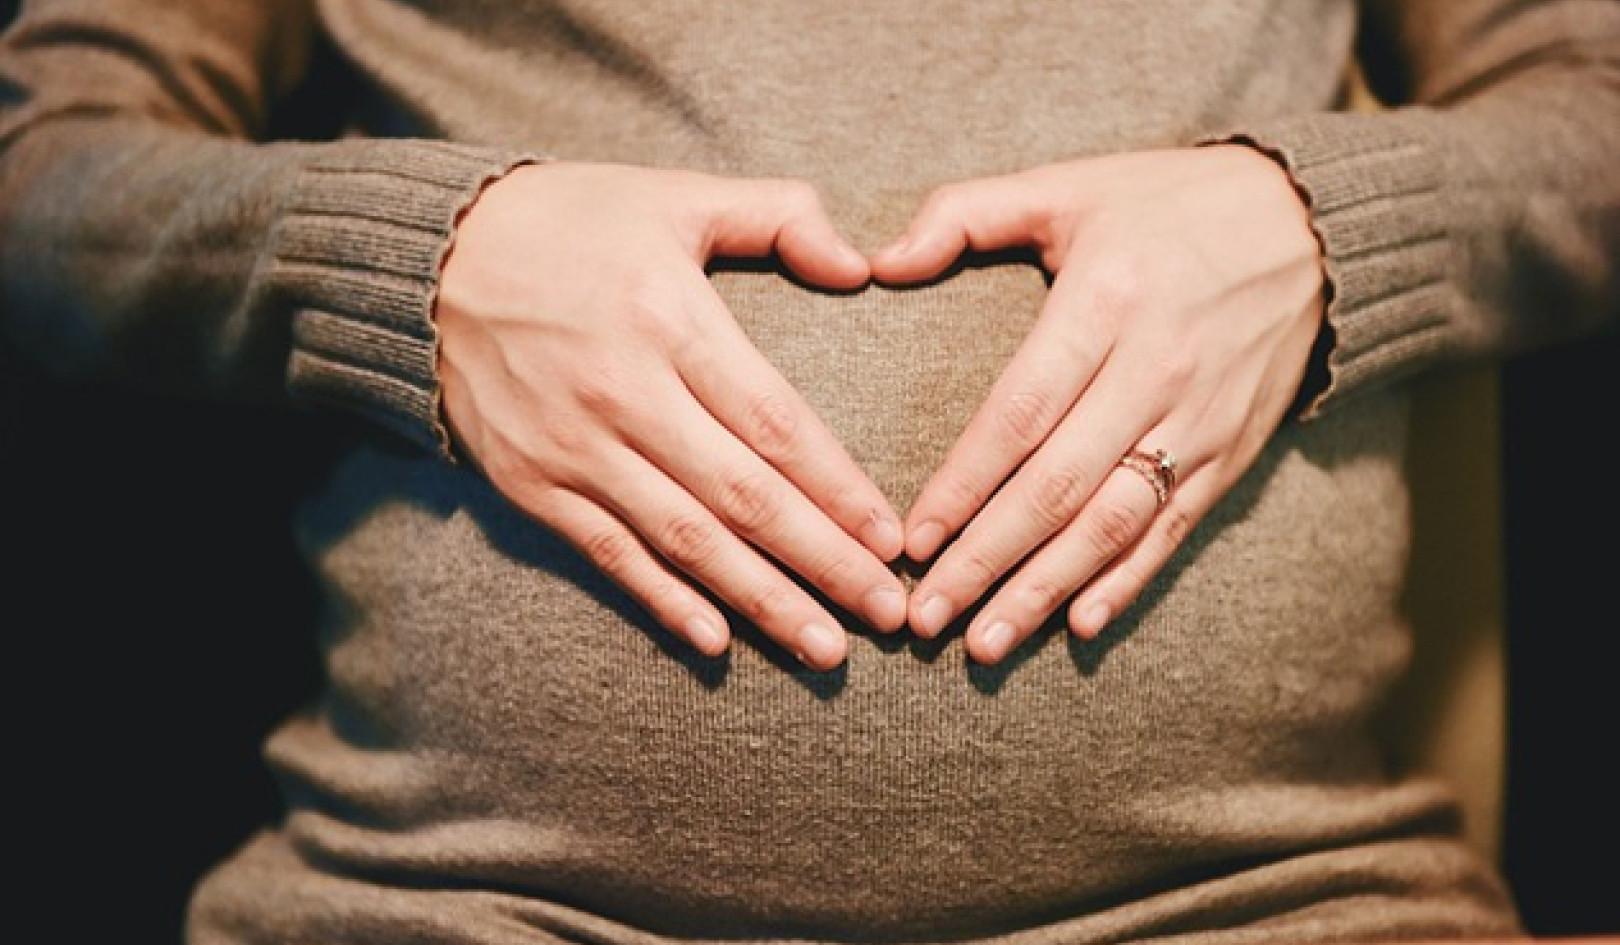 गर्भधारण में सहायता के लिए: स्त्री की शक्ति से जुड़ना